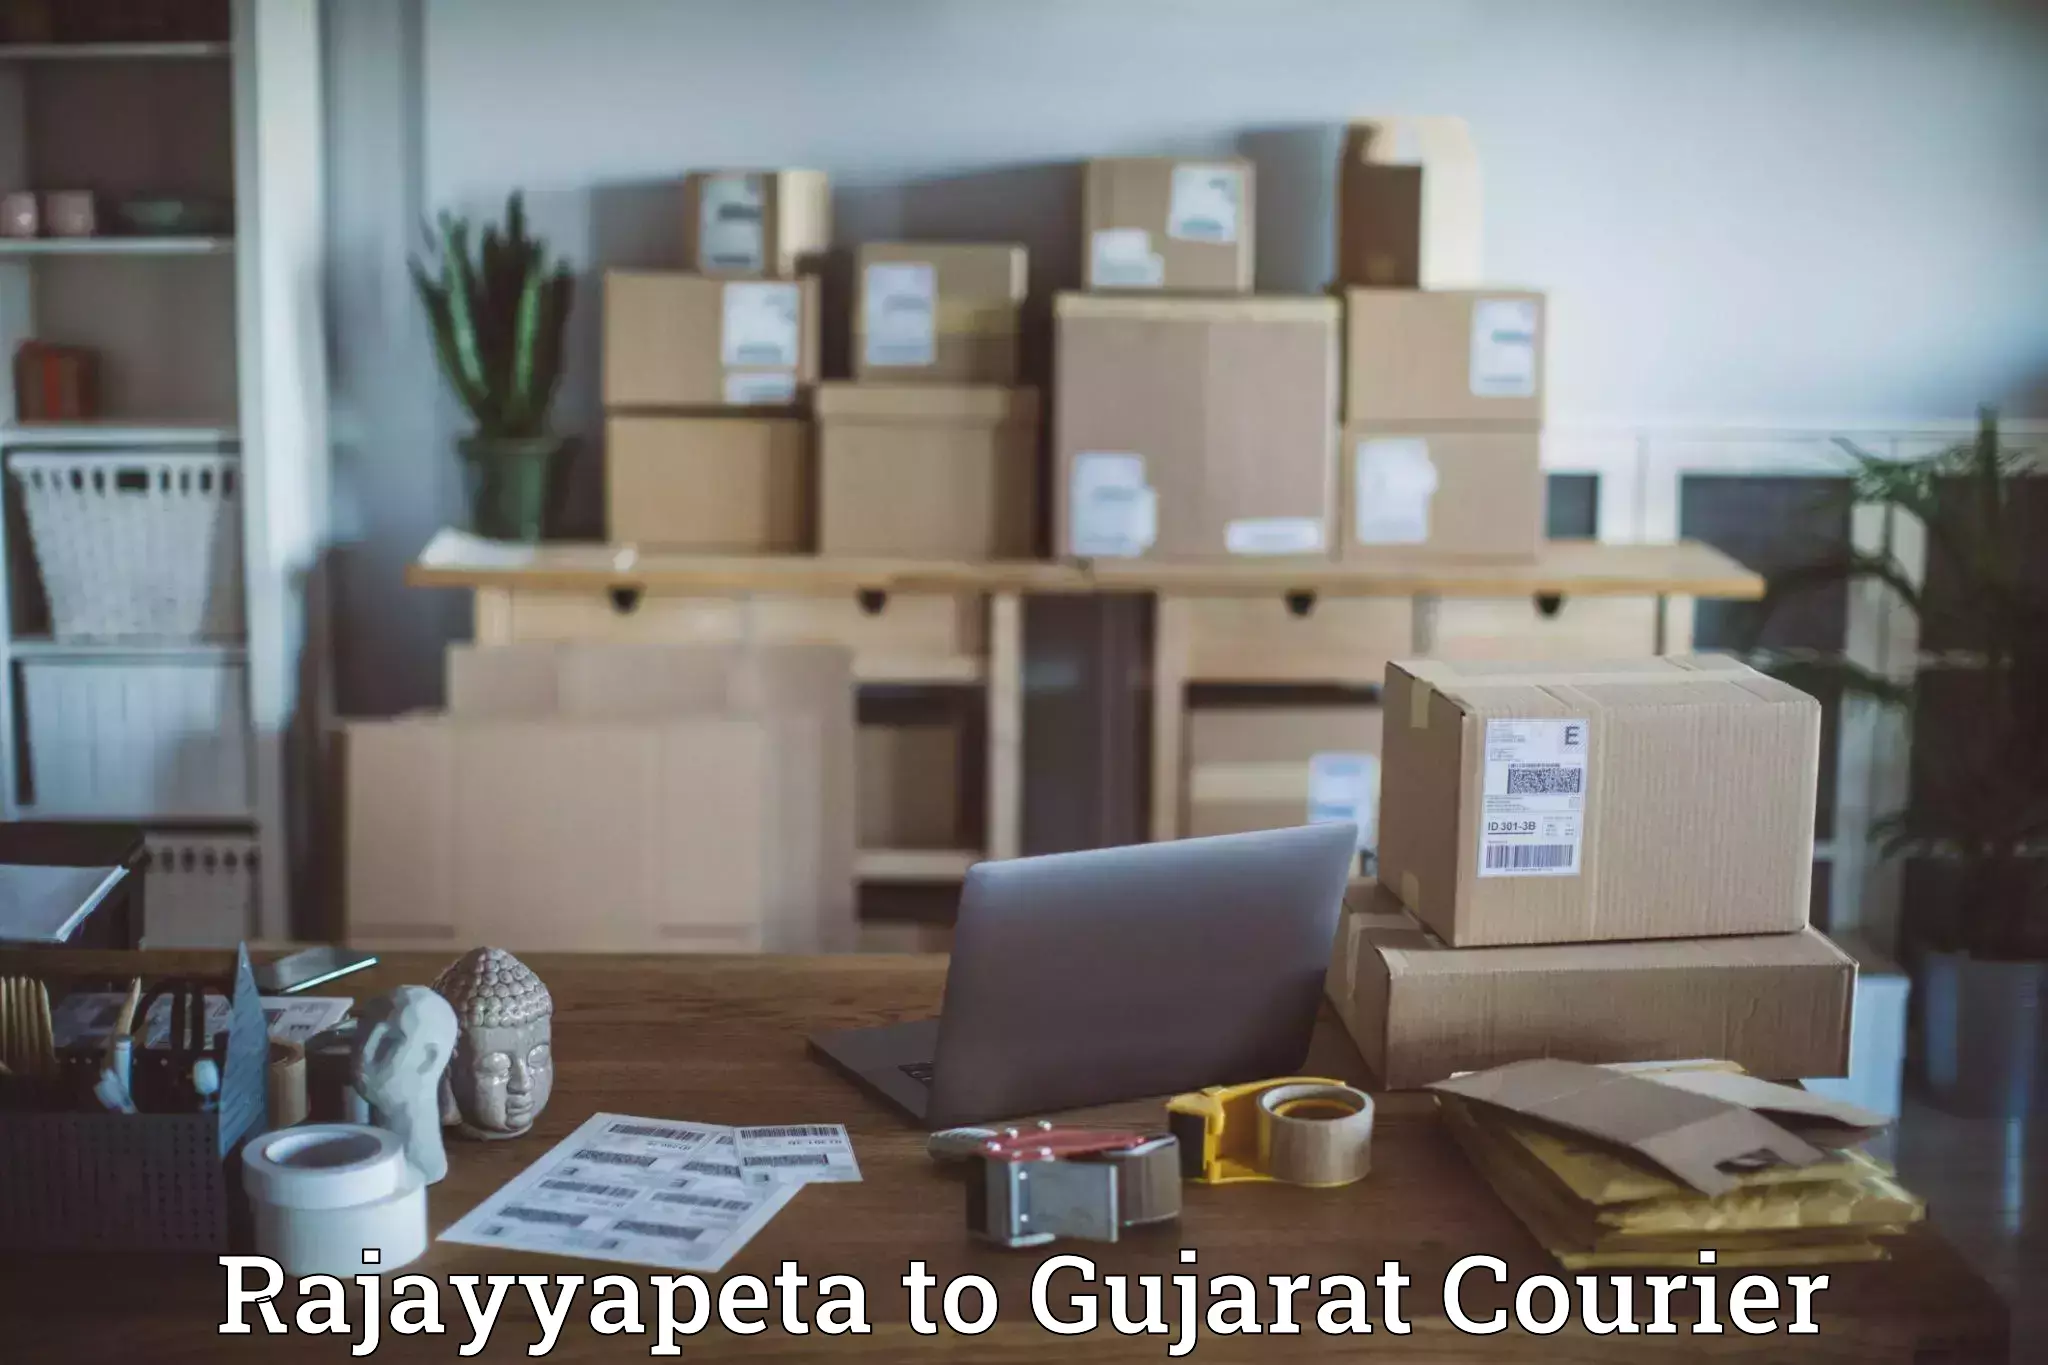 Door-to-door freight service Rajayyapeta to Gujarat